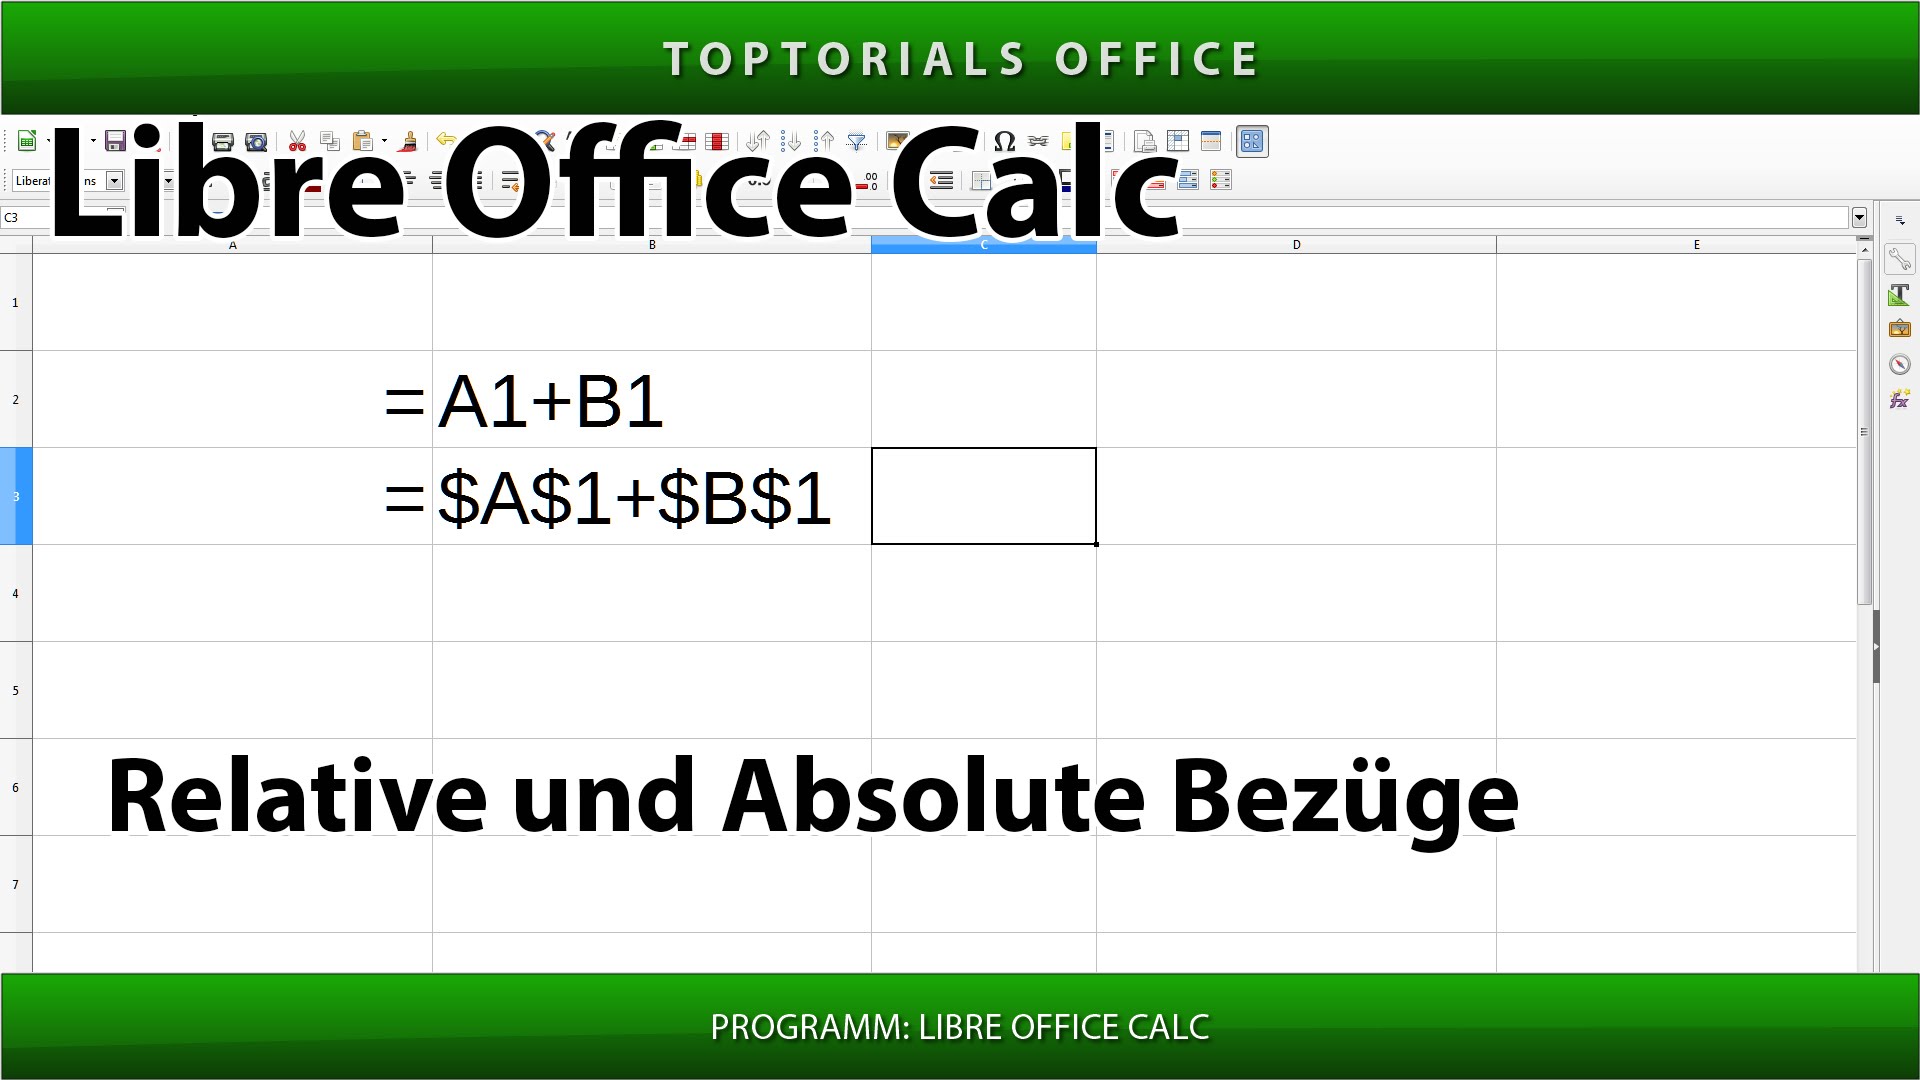 RELATIVE und ABSOLUTE BEZÜGE mit Beispielen (Libre Office Calc) - TOPTORIALS1920 x 1080